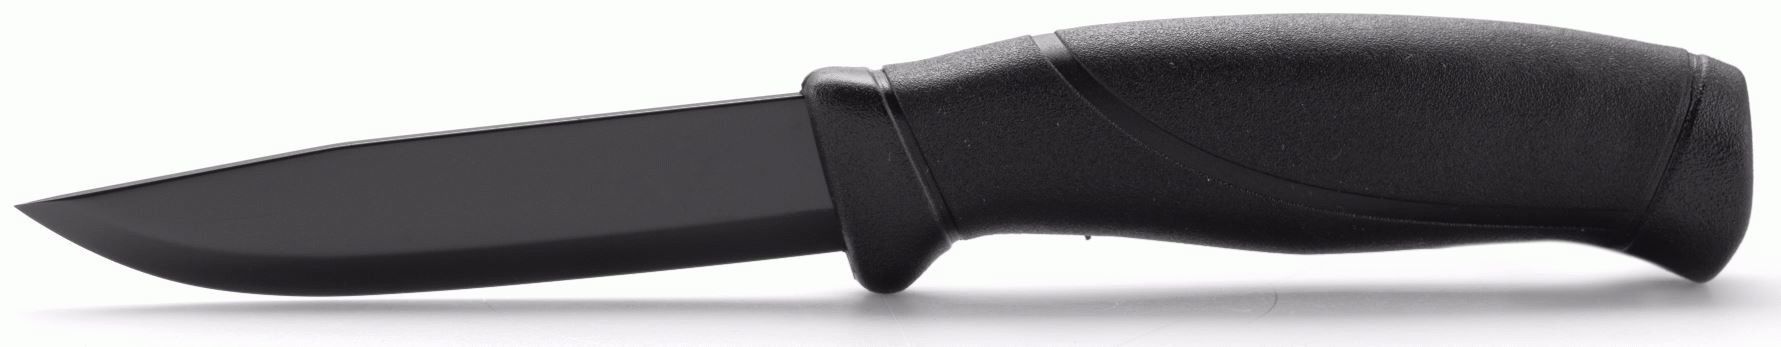 Нож с фиксированным лезвием Morakniv Companion Tactical BlackBlade, сталь Sandvik 12С27, рукоять эластомер - фото 4